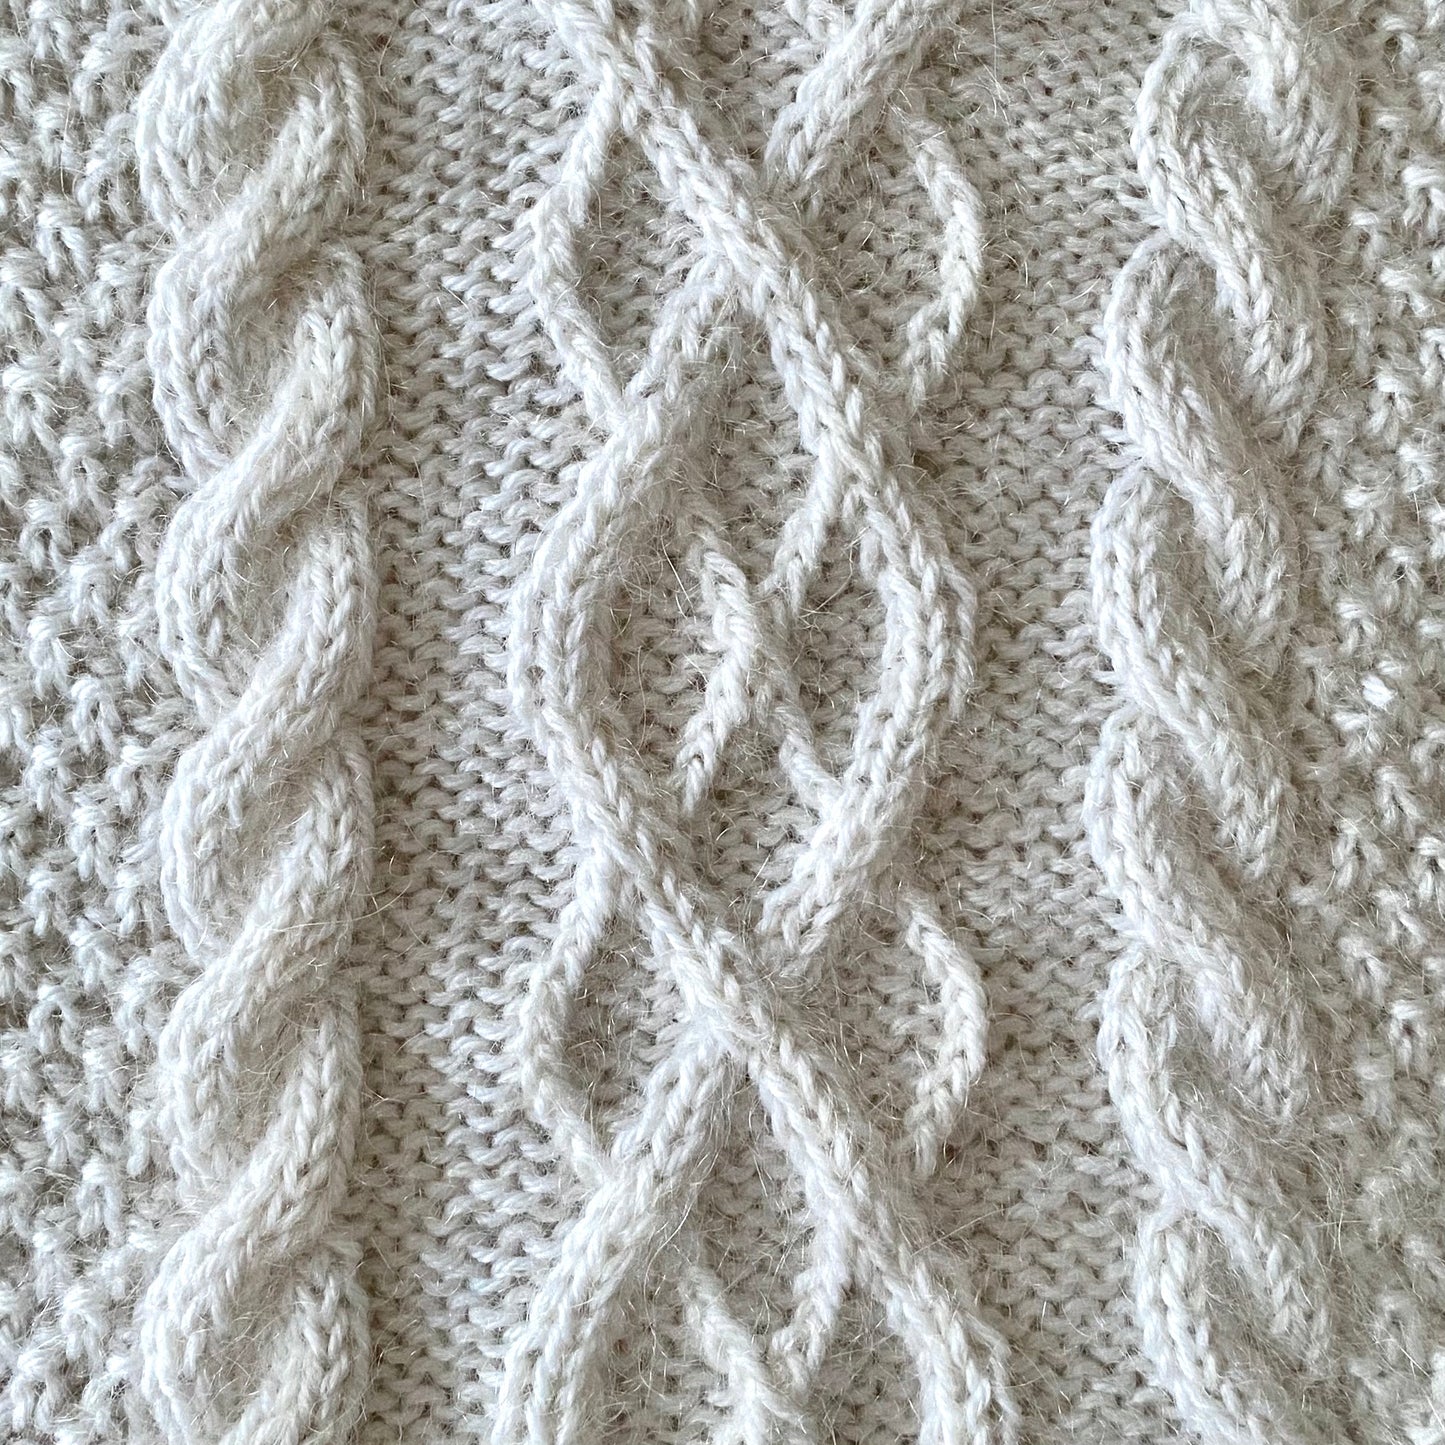 Swirl Sweater Baby - Dansk